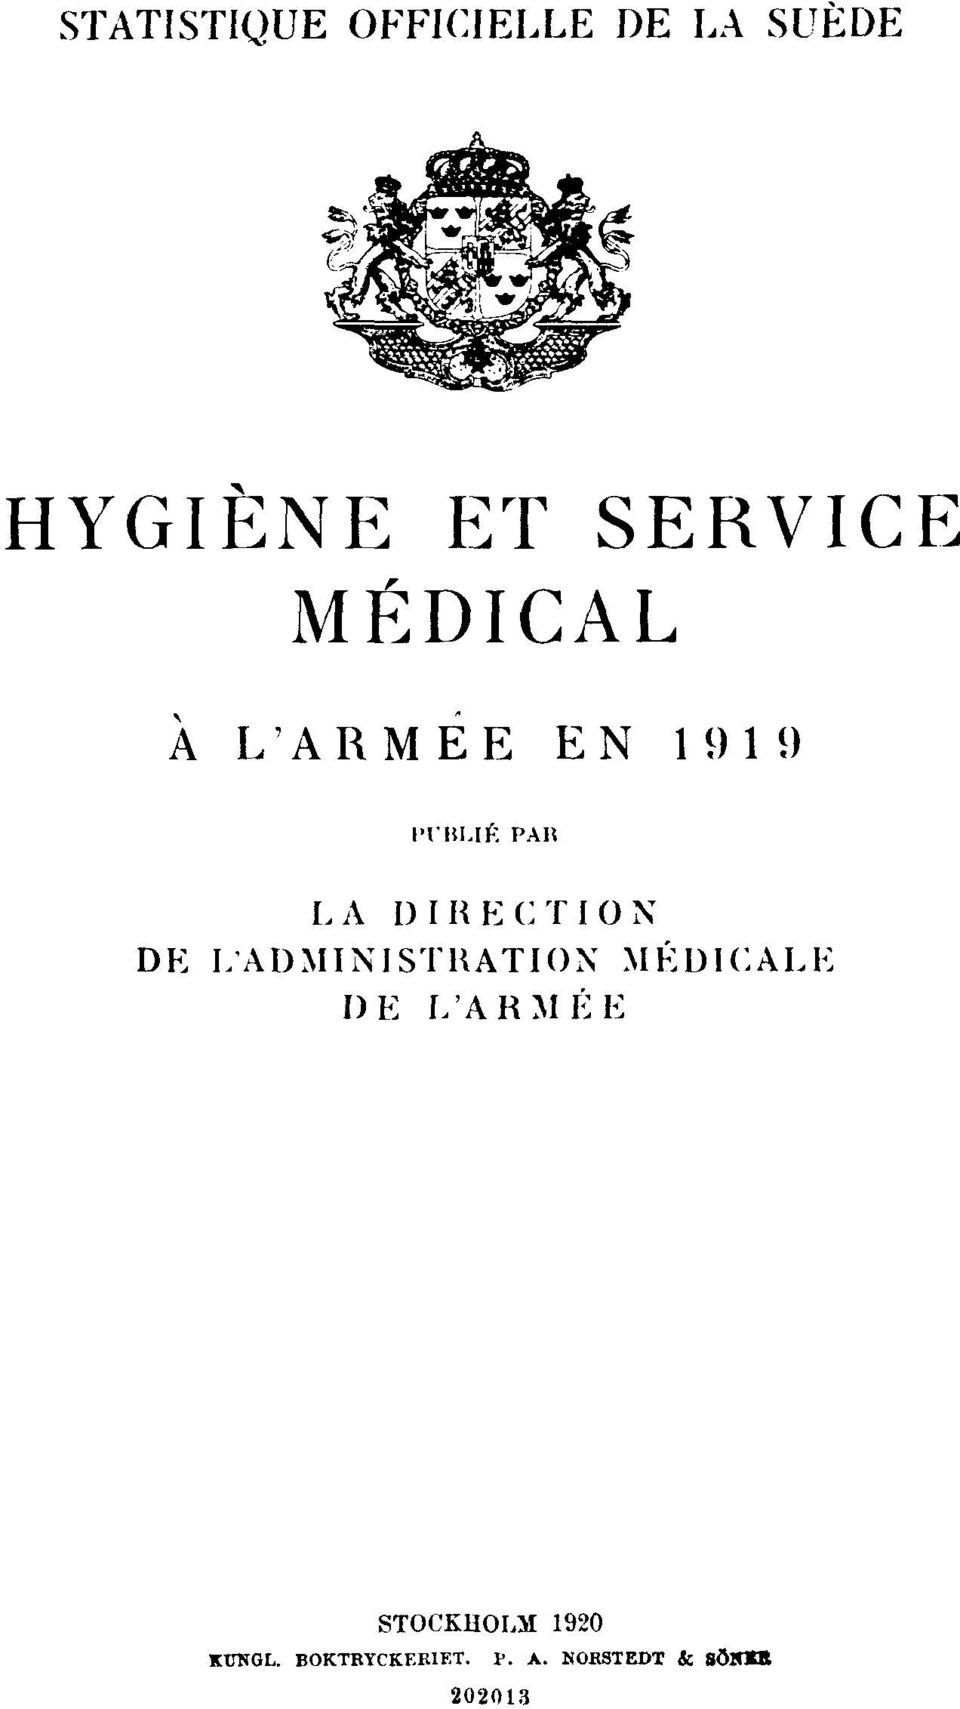 DIRECTION DE L'ADMINISTRATION MÉDICALE DE L'ARMÉE